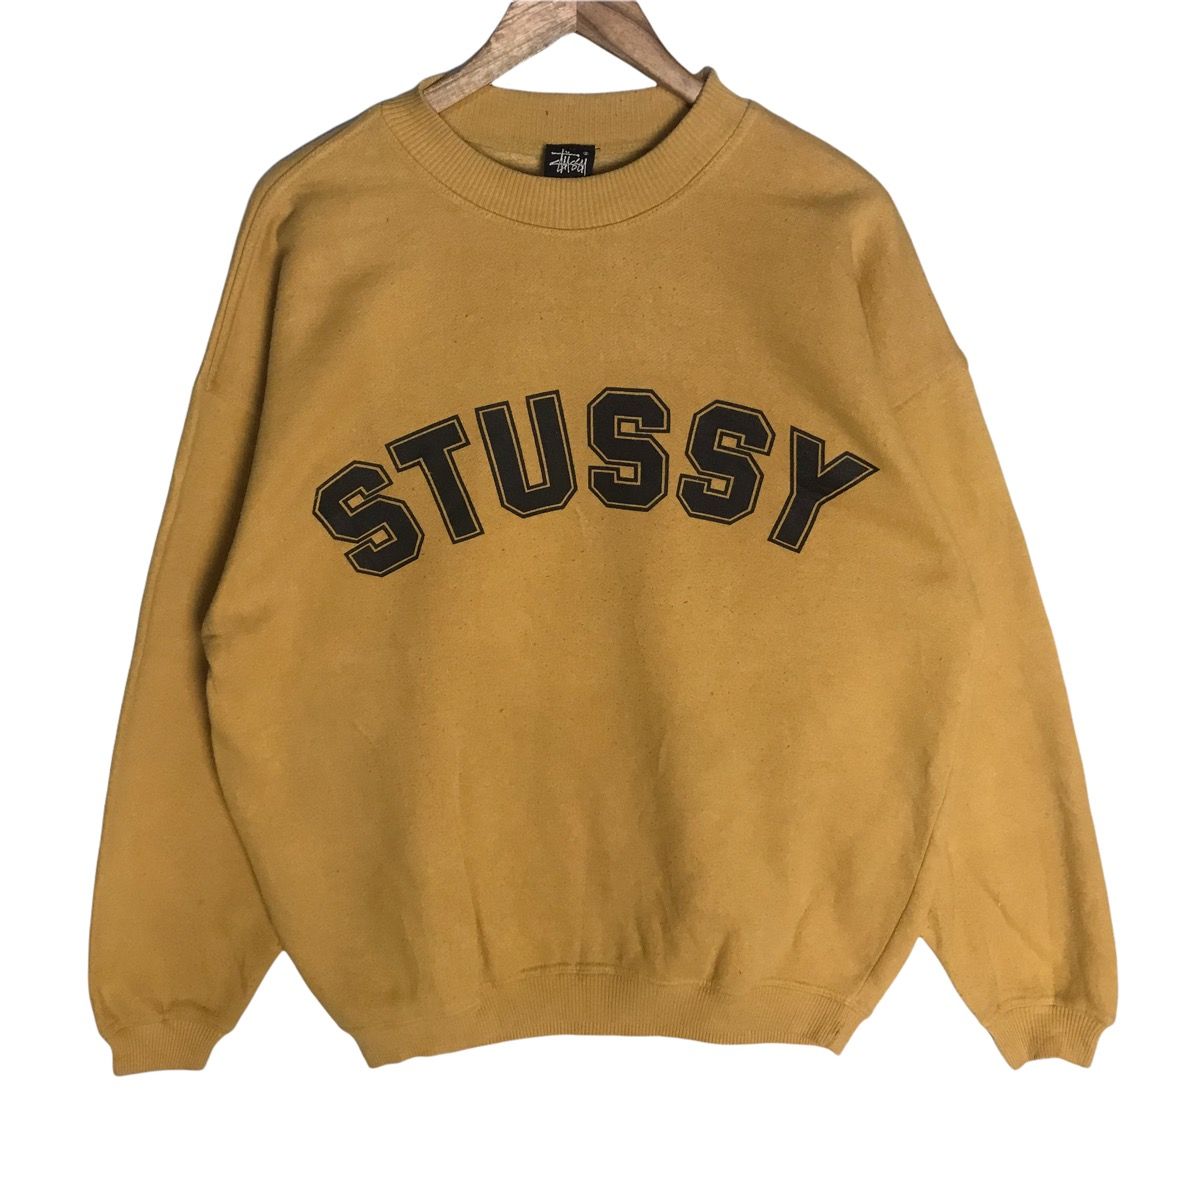 Vintage stussy big spell logo sweatshirt - 1